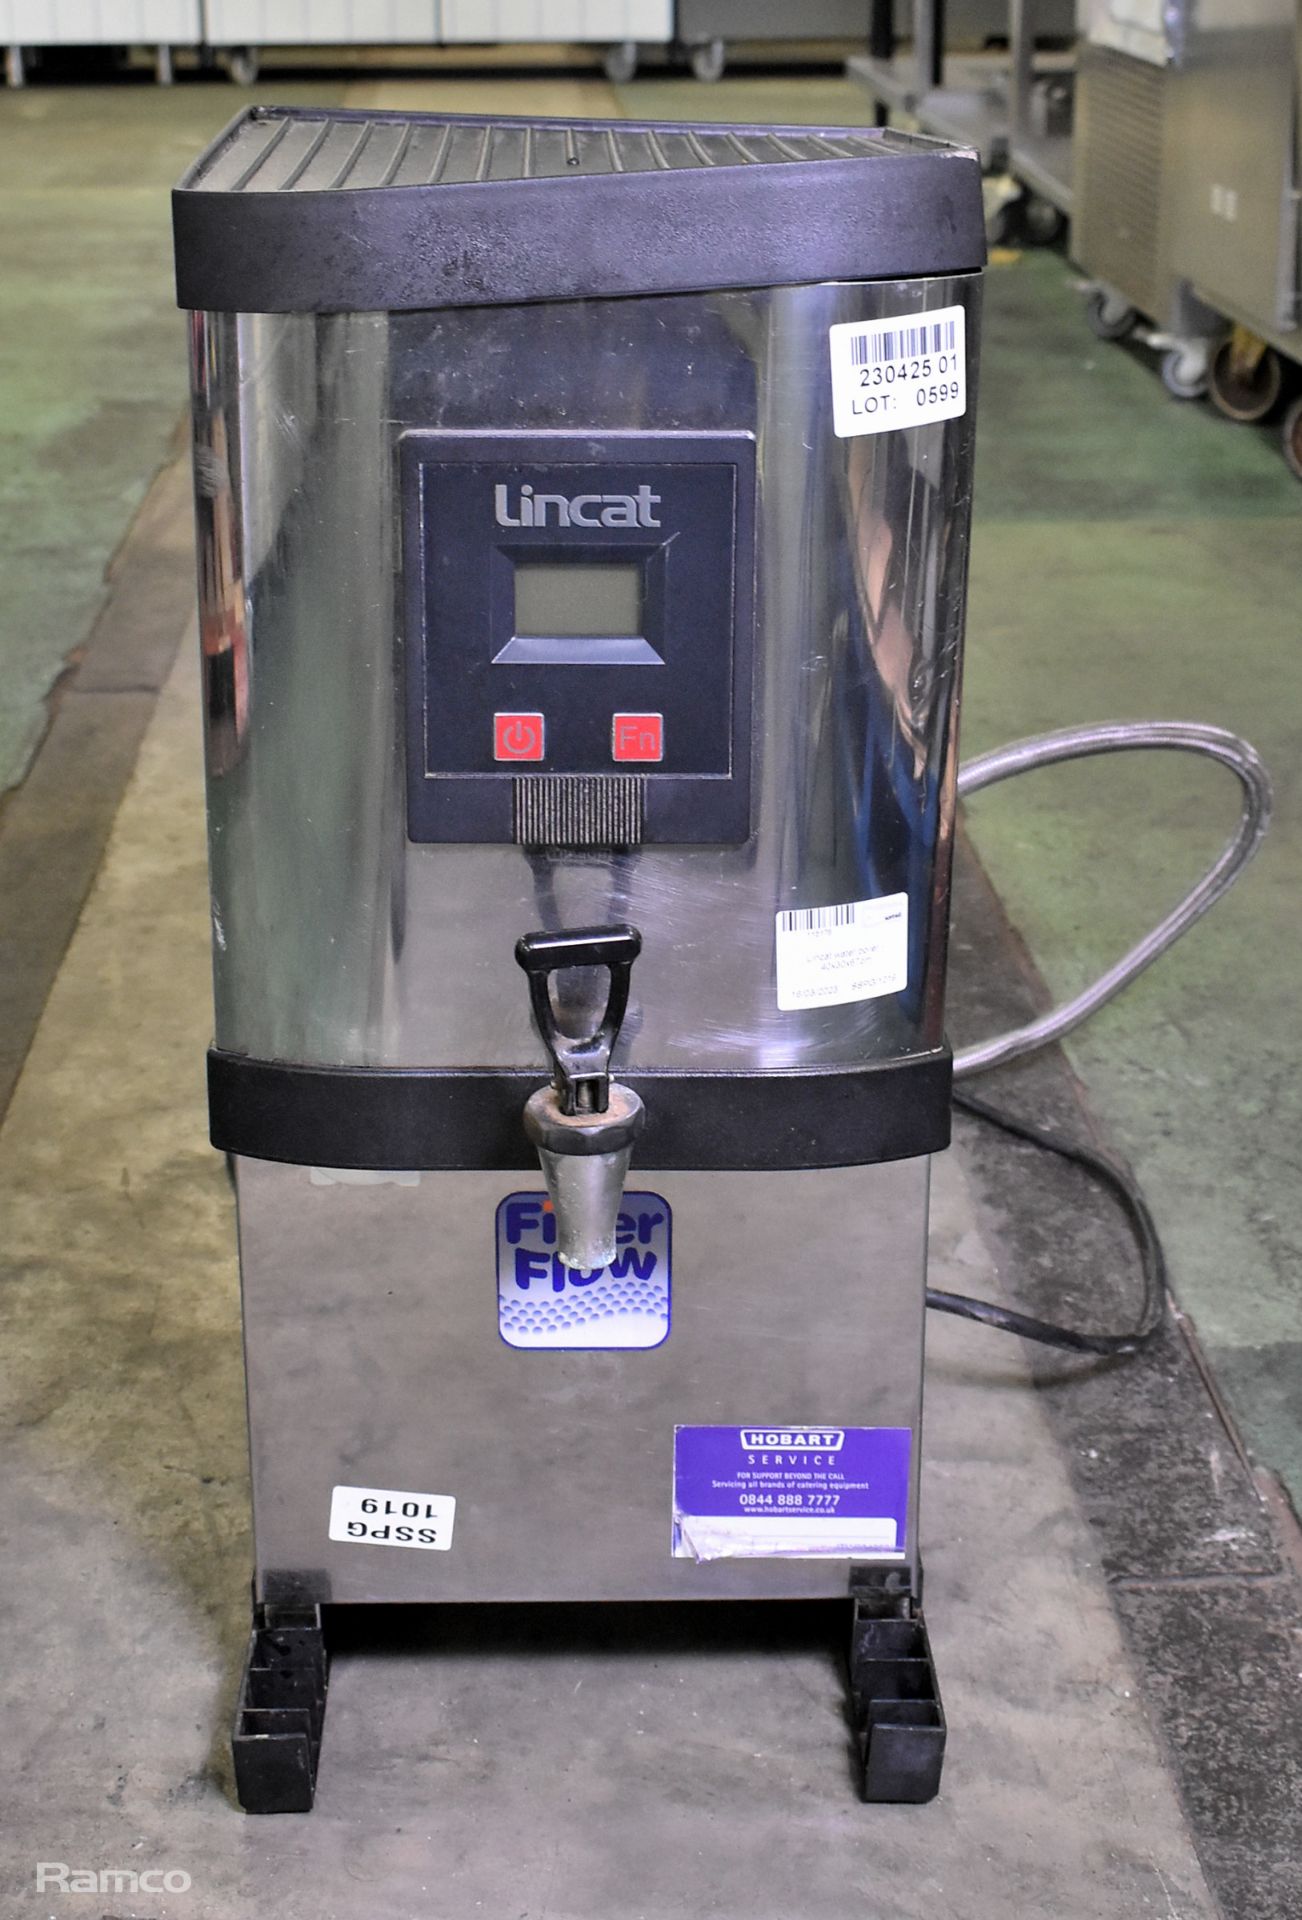 Lincat water boiler - 40 x 30 x 67cm